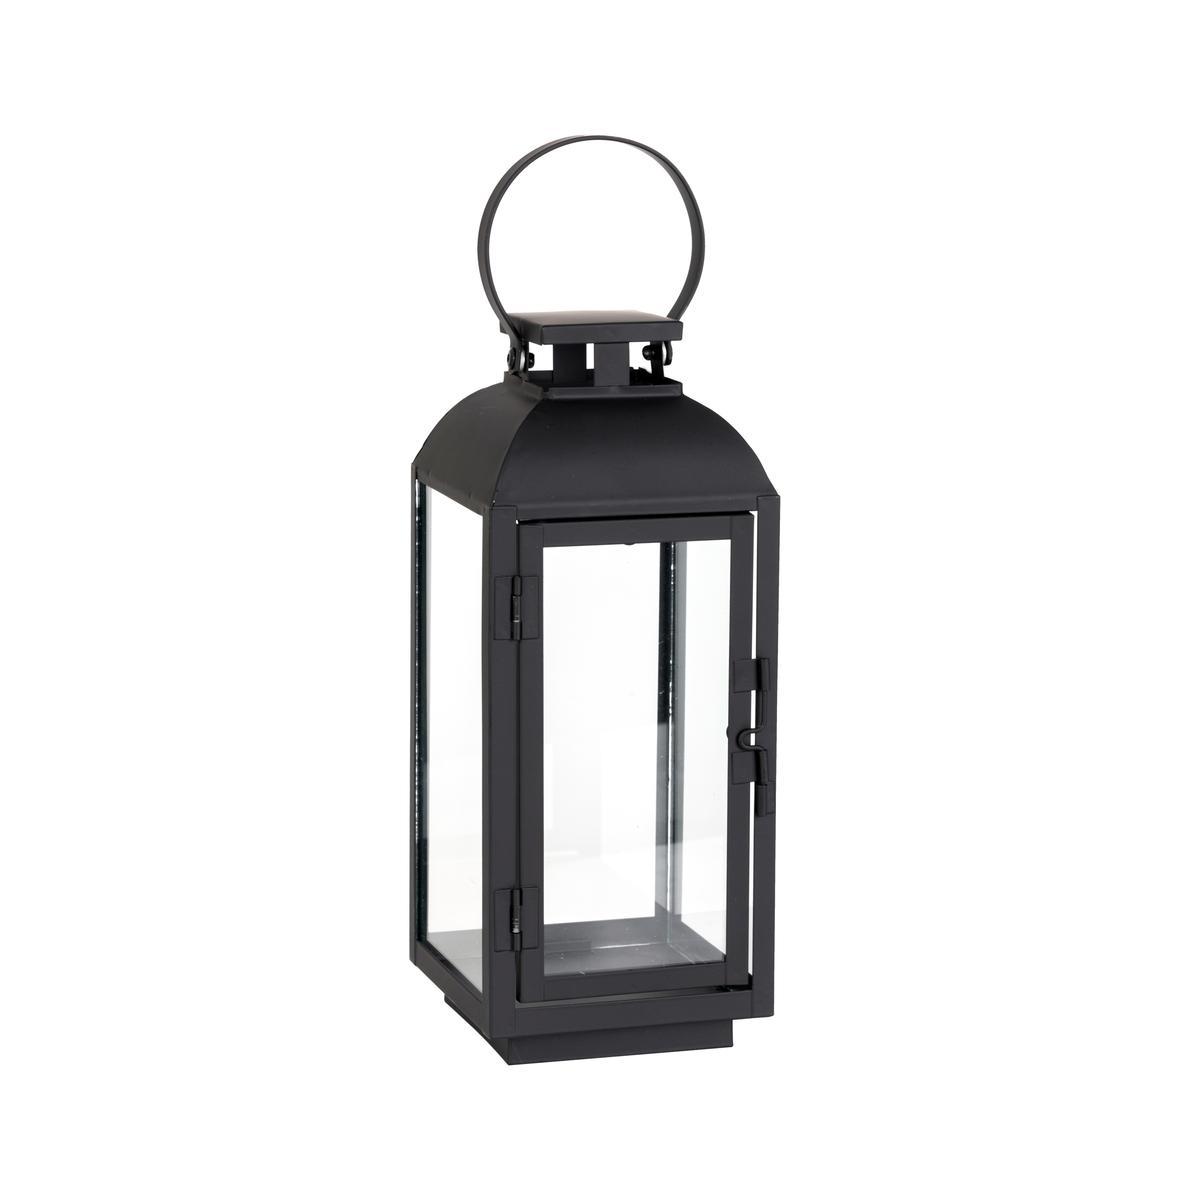 Lanterne LED Lafiora h 31,5 cm scintillant noir, argent - HORNBACH